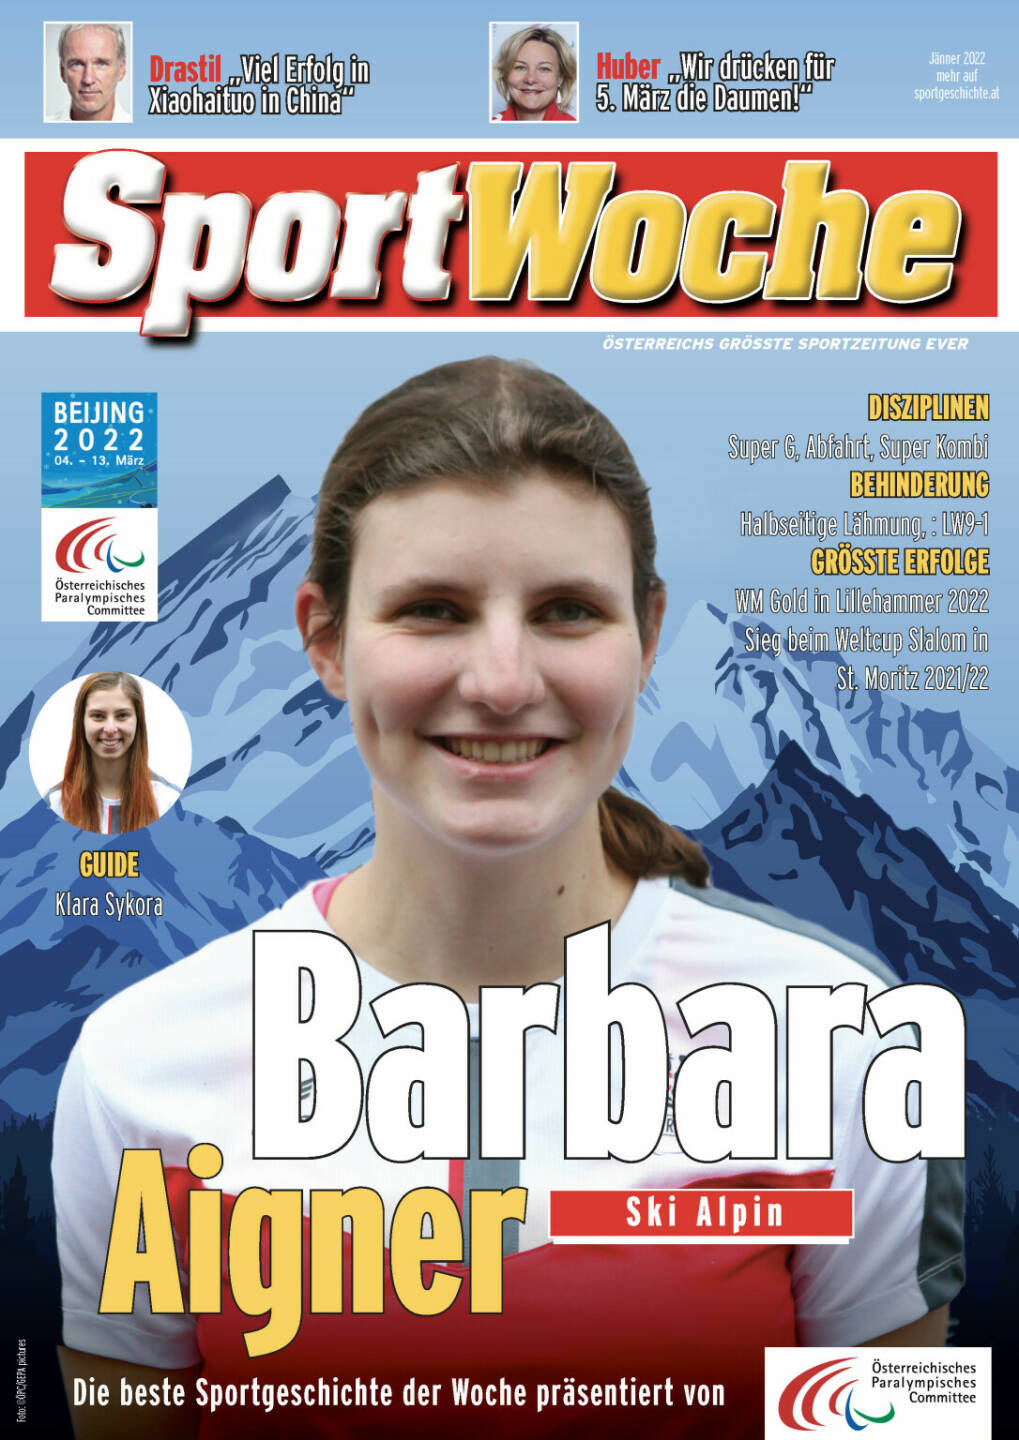 Barbara Aigner - Disziplinen Super G, Abfahrt, Super Kombi, Behinderung Halbseitige Lähmung, : LW9-1, Größte Erfolge  WM Gold in Lillehammer 2022, Sieg beim Weltcup Slalom in St. Moritz 2021/22
